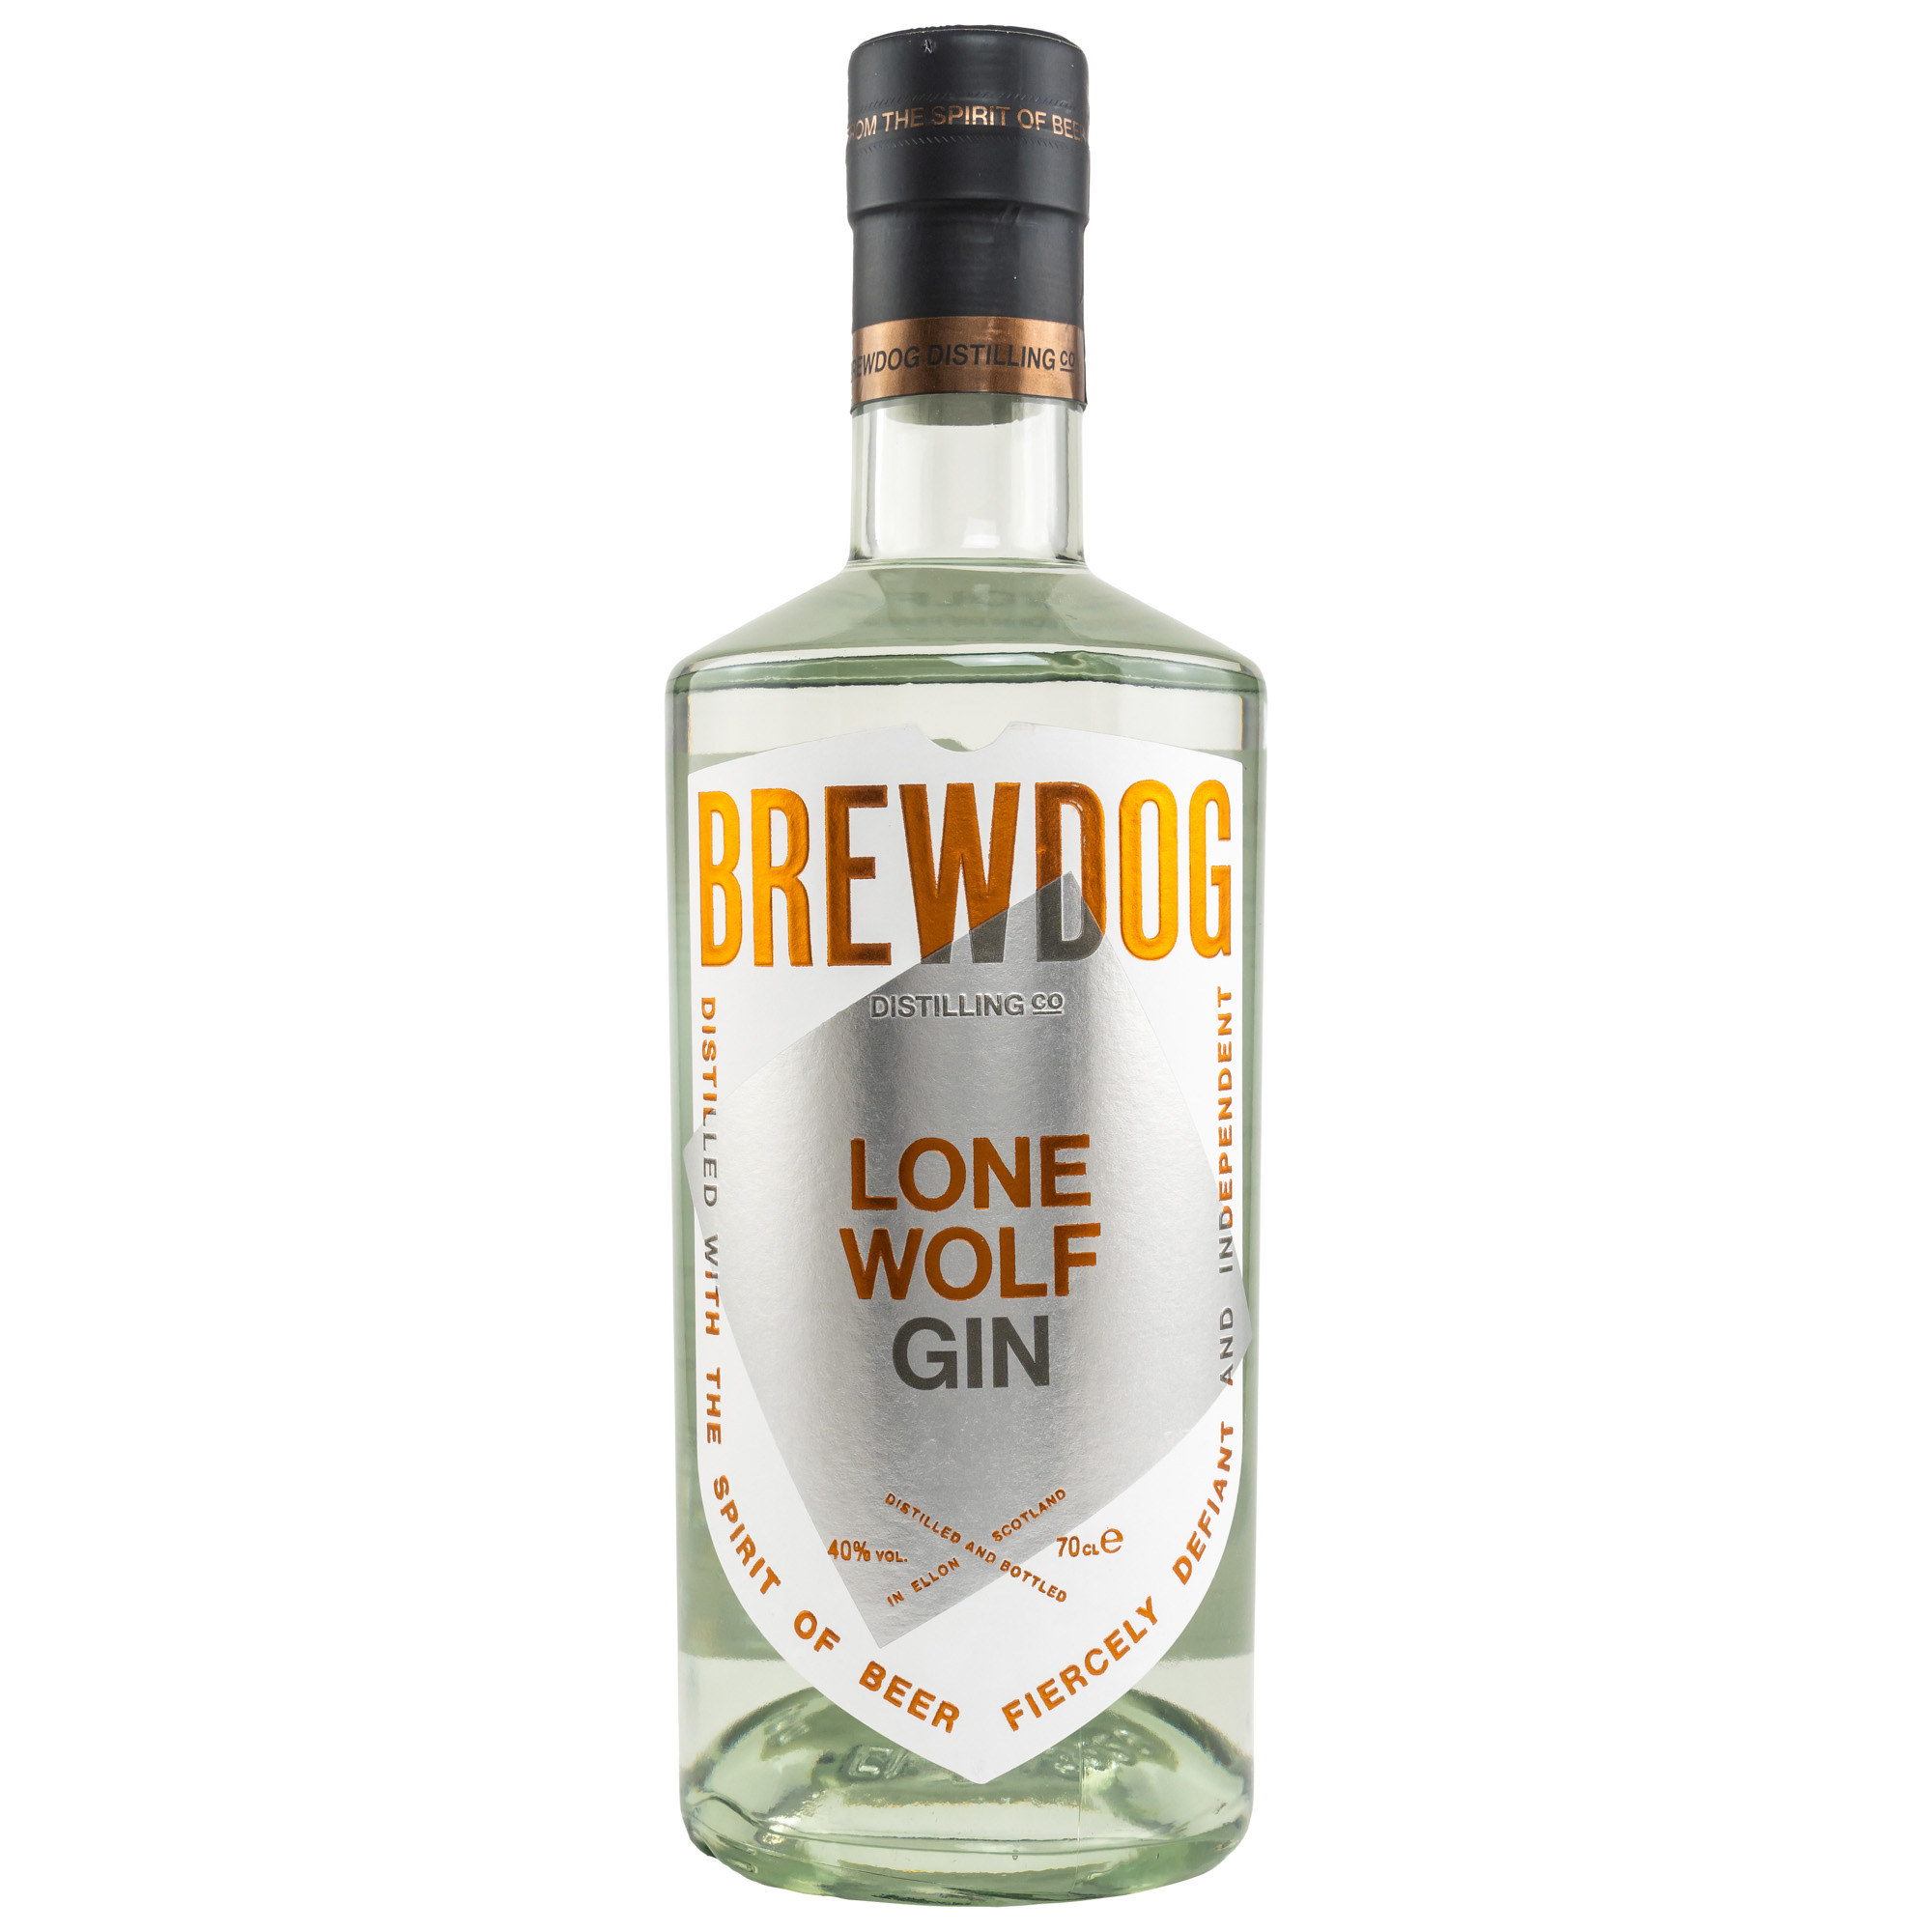 LoneWolf - Gin - Brewdog 0,7l 40%vol.